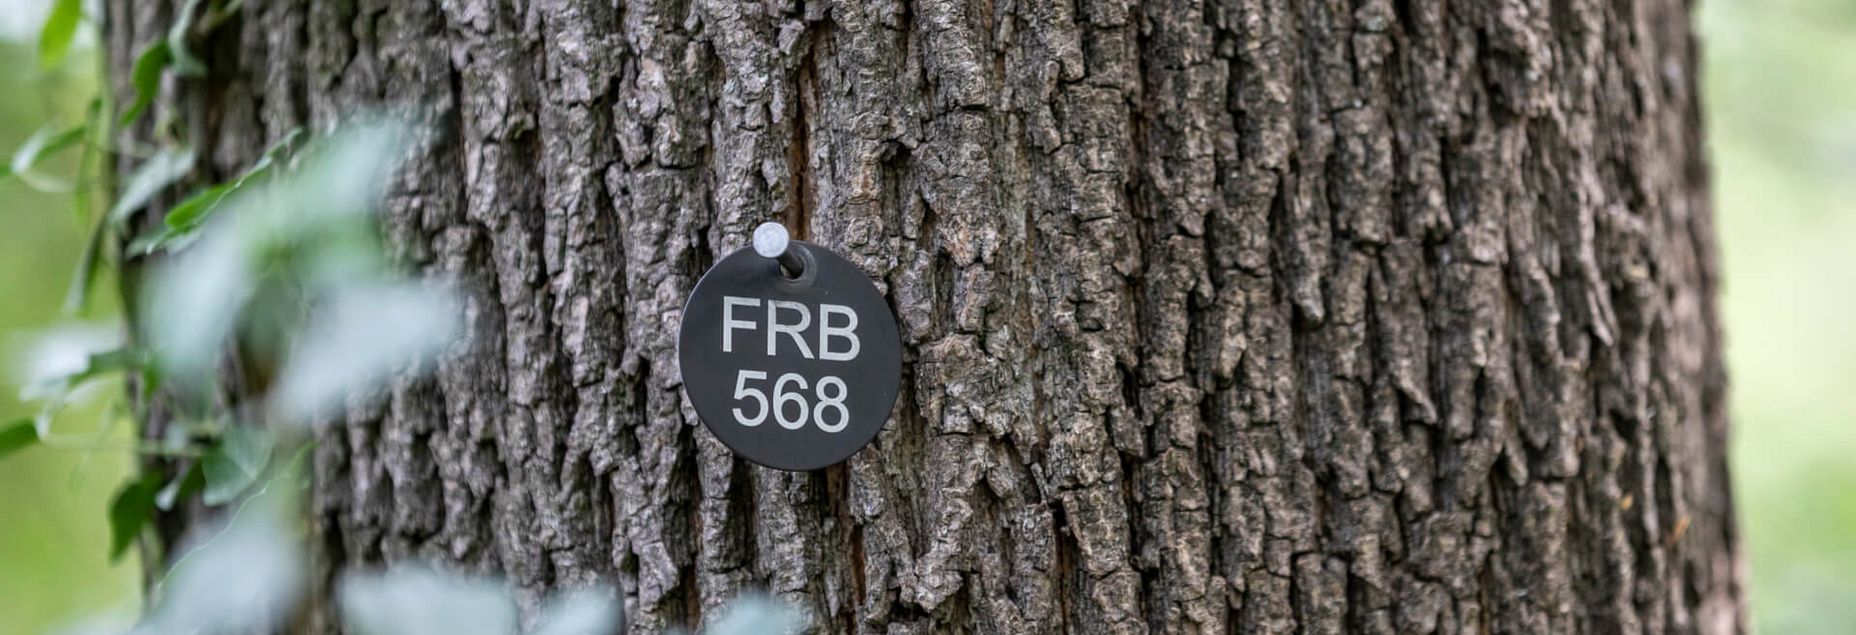 FRB 568 - Plakette